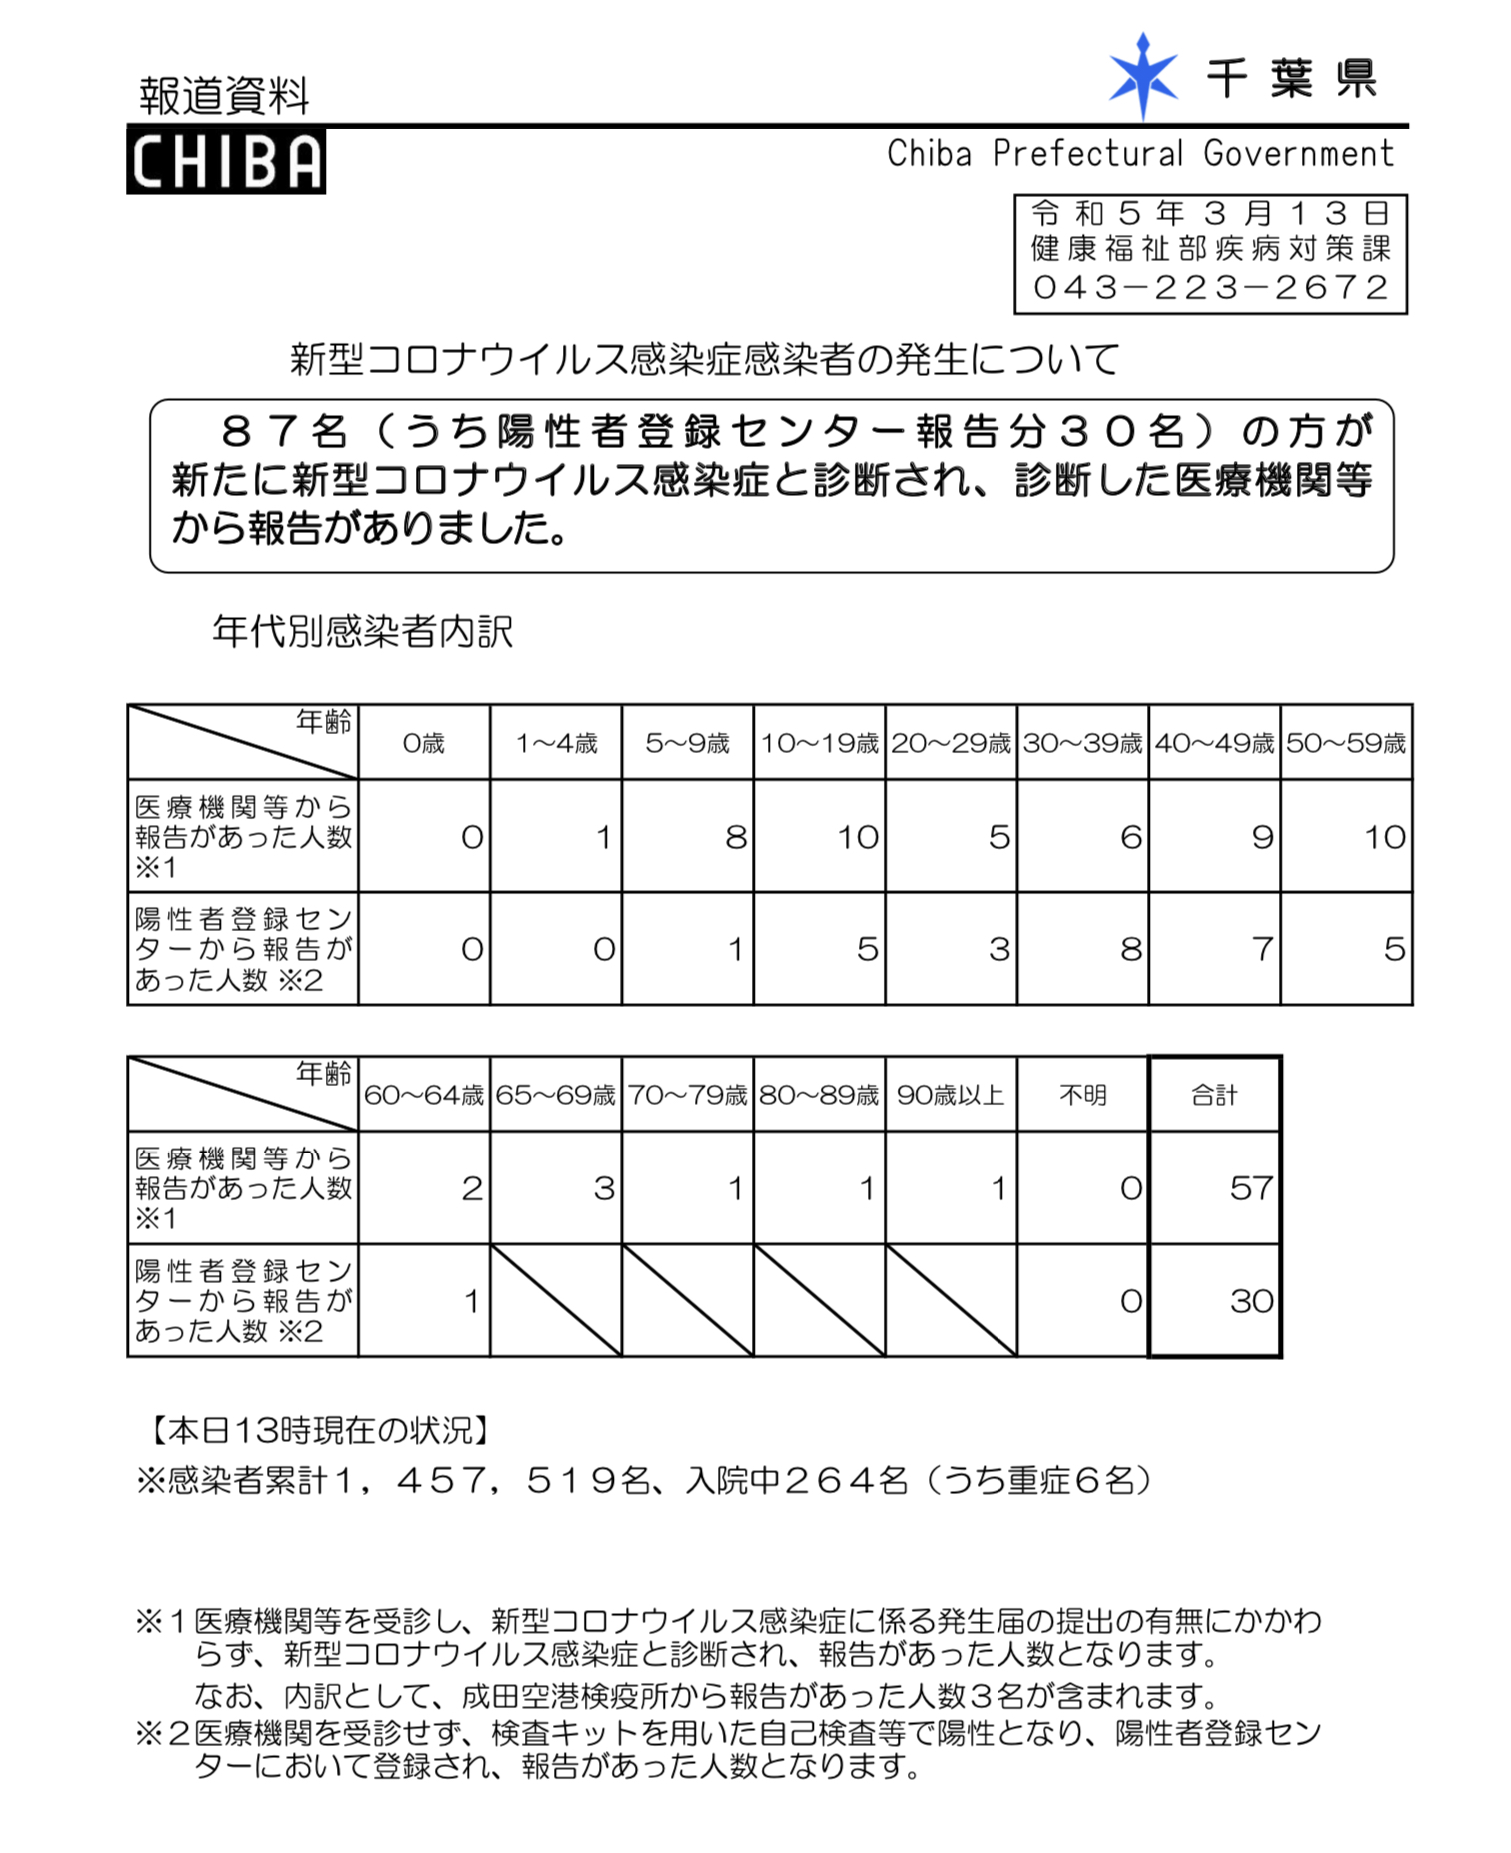 2023年3月13日千葉県新型コロナウイルス感染症情報